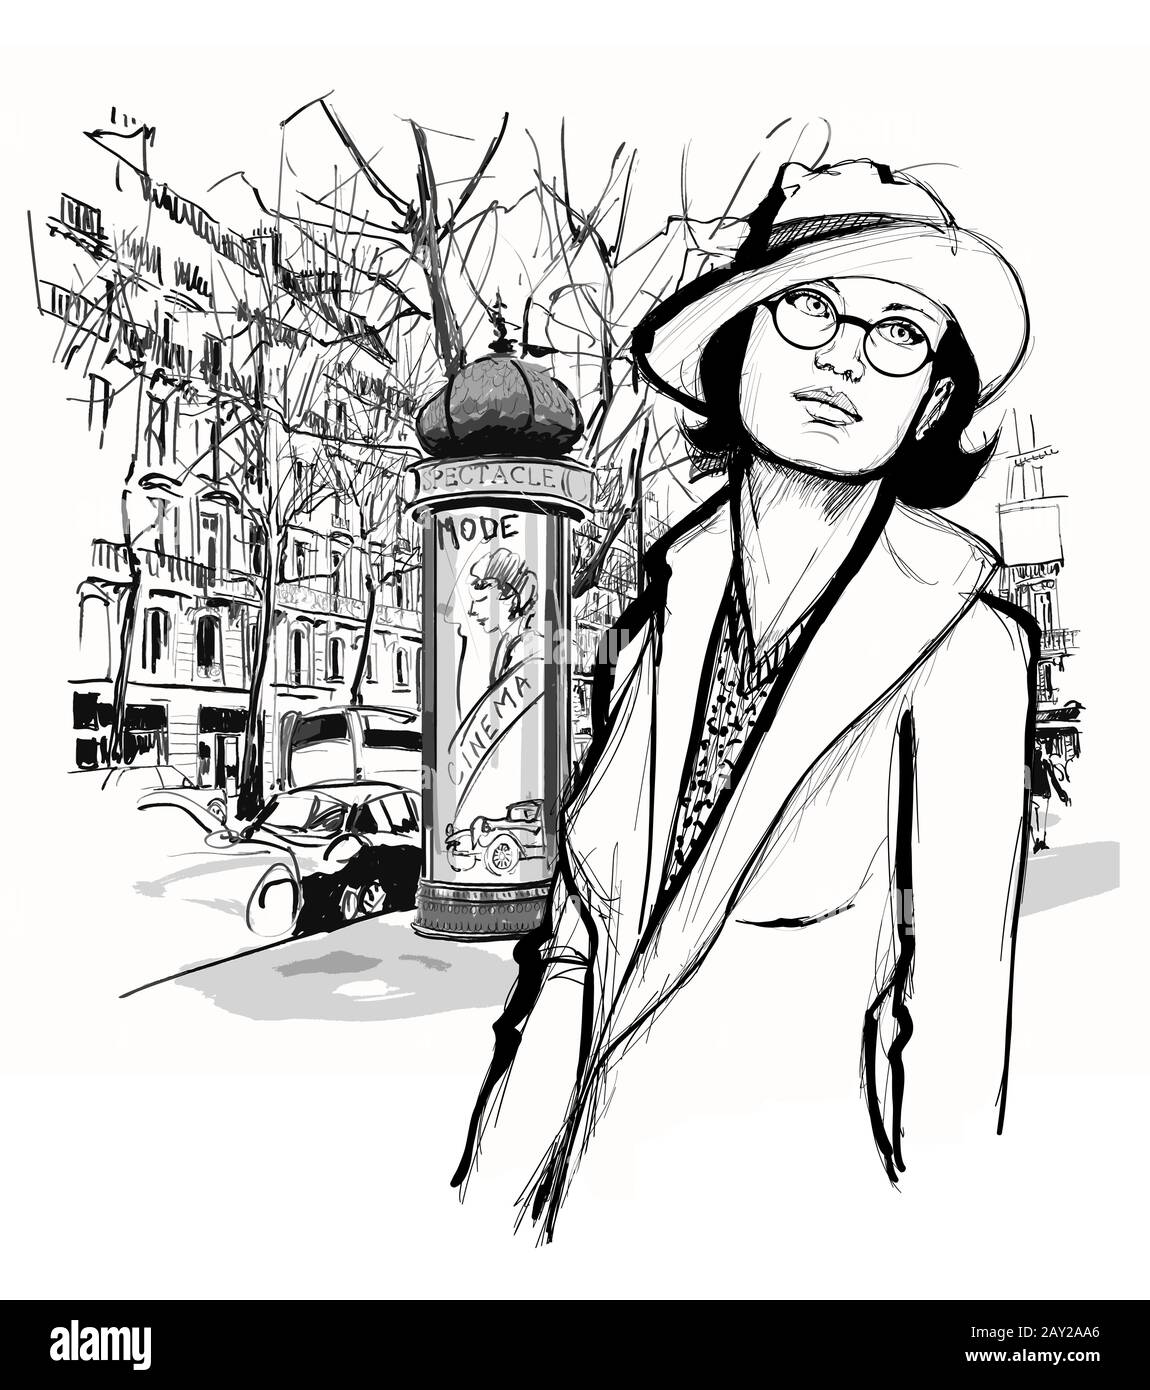 Hübsche Frau mit Hut, die in einer Straße in Paris spaziert - Vektorgrafiken (Ideal zum Drucken auf Stoff oder Papier, Plakat oder Tapete, Hausdekoration Stock Vektor